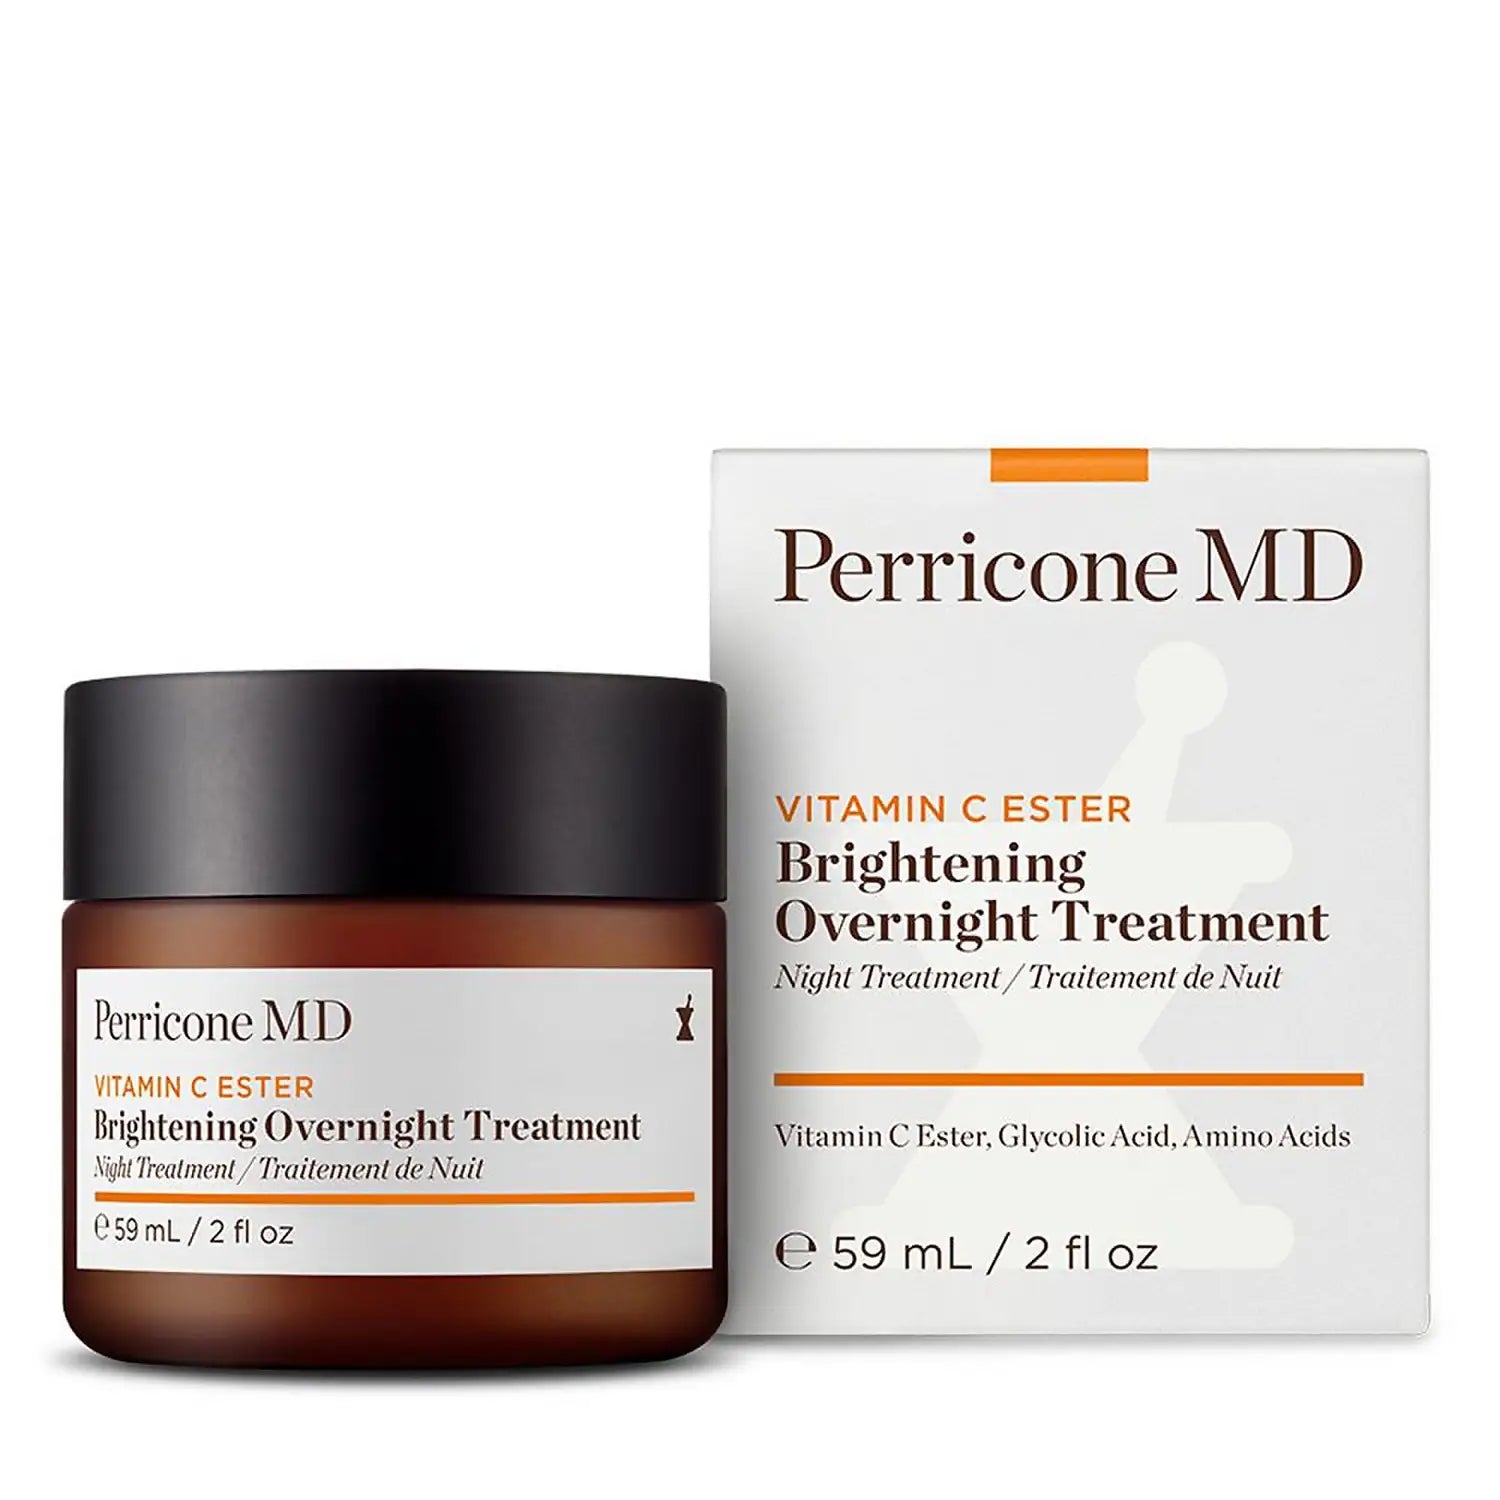 Perricone MD Vitamin C Ester Bright Overnight Treatment